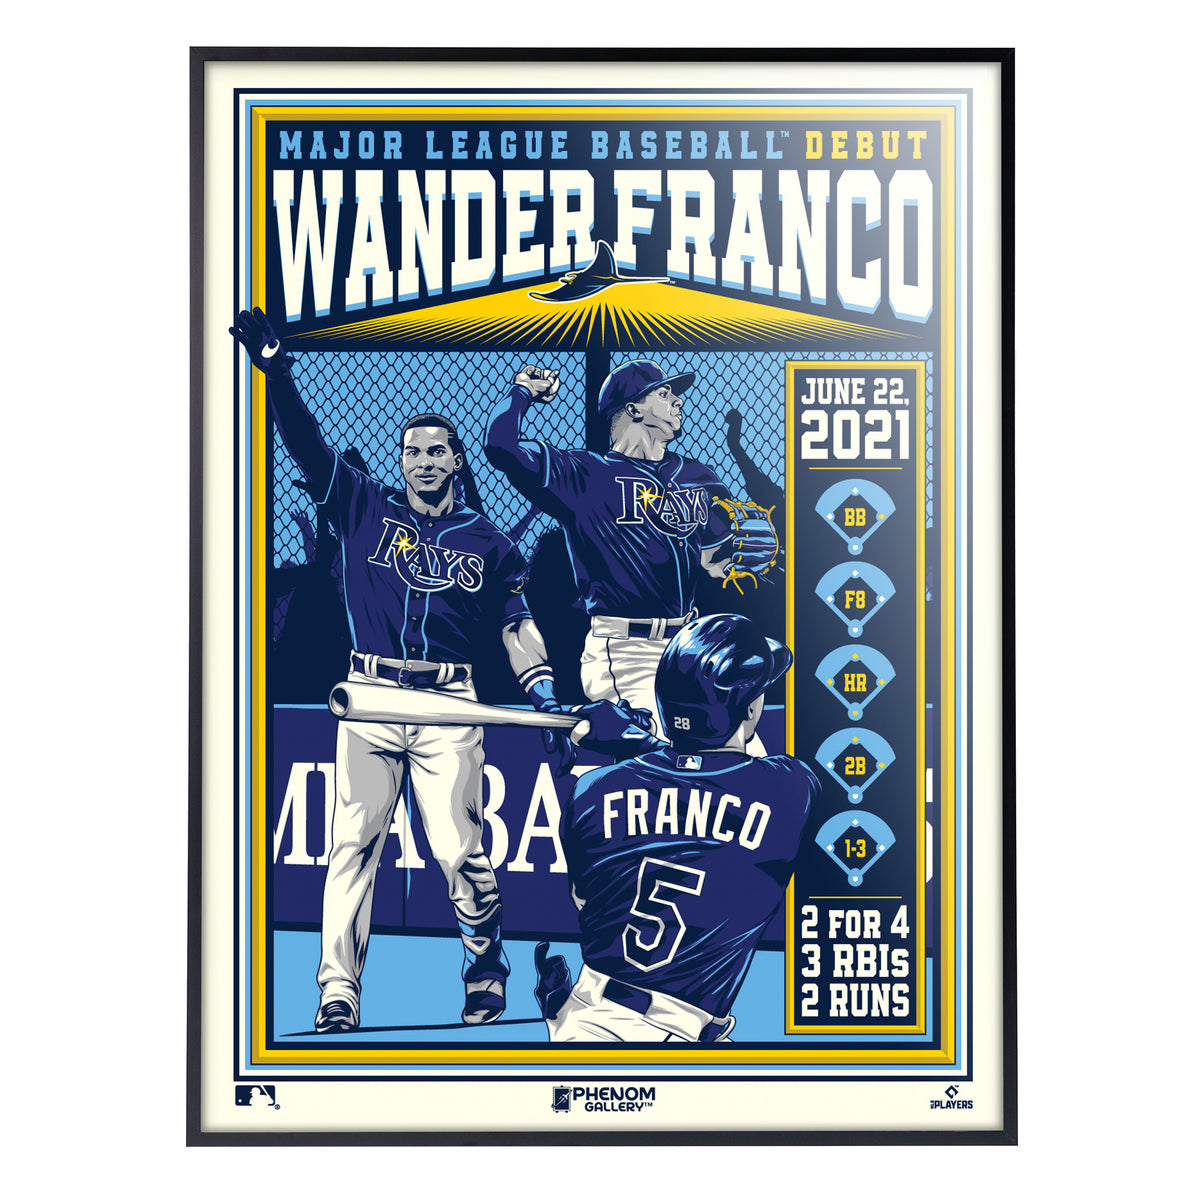  Signed Wander Franco Batting Poster Canvas Art Poster